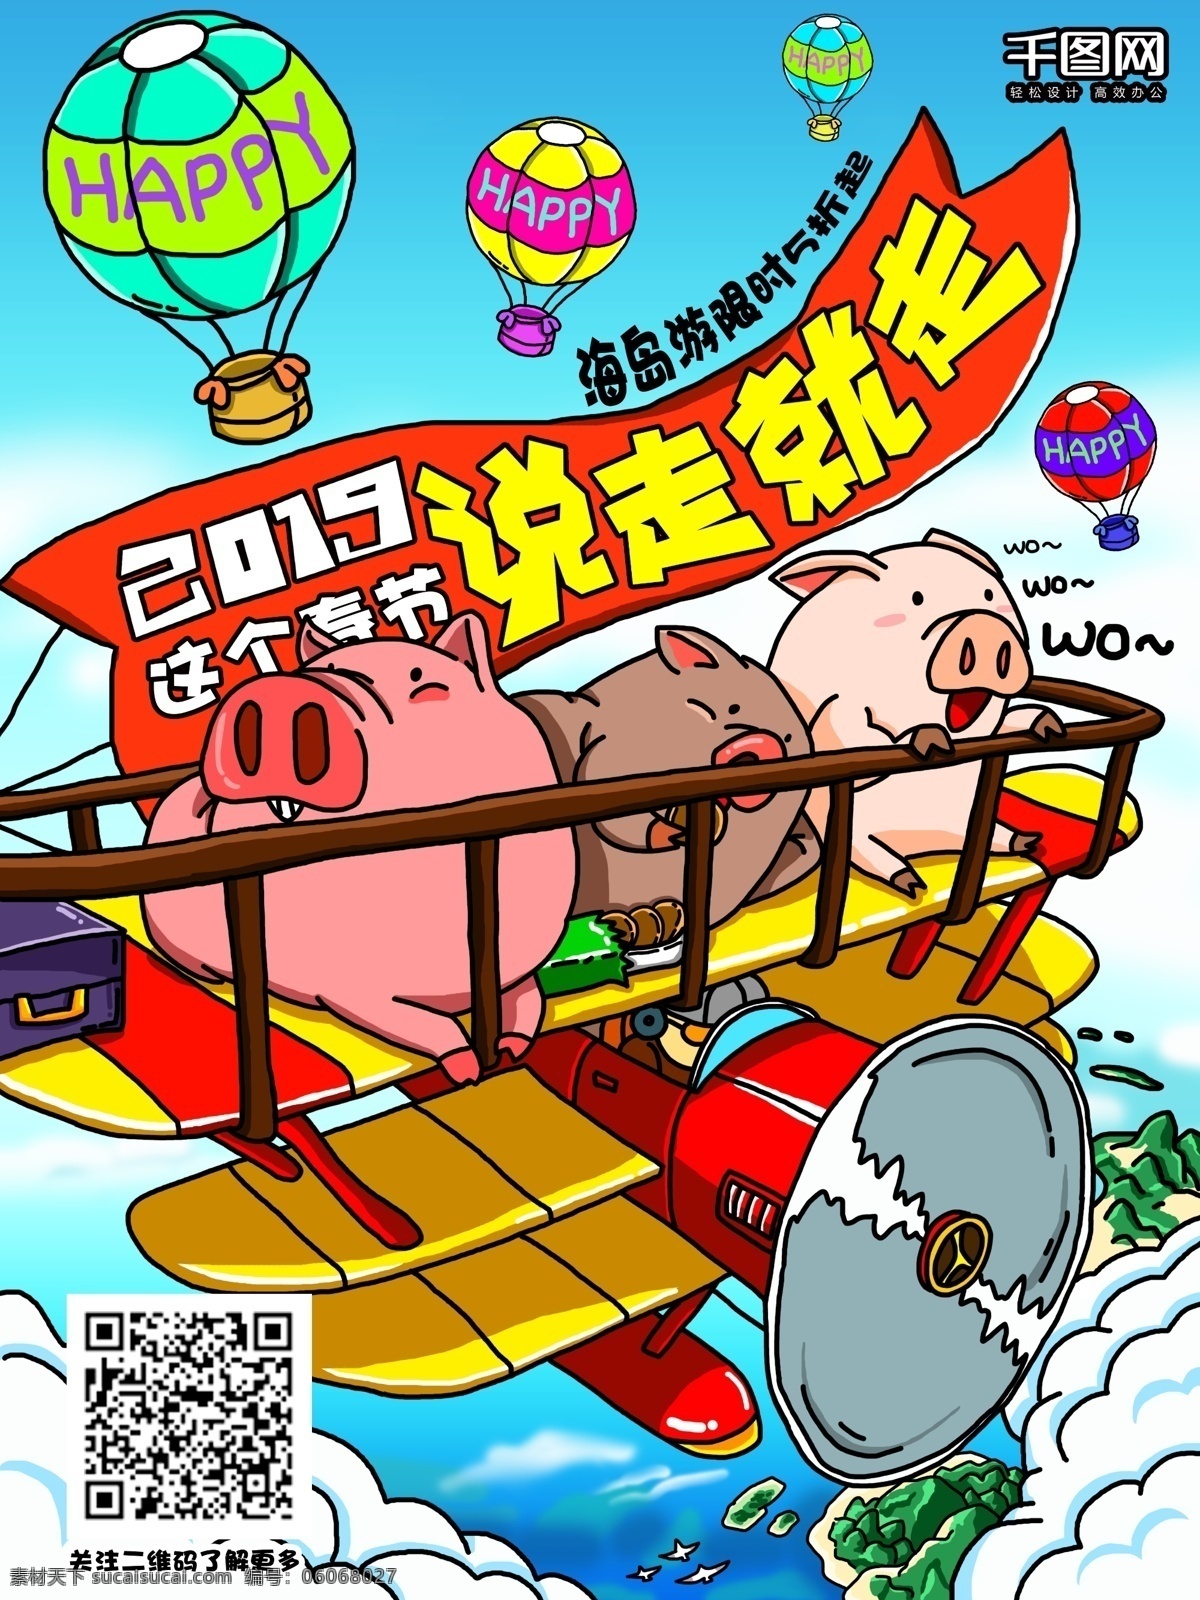 2019 手绘 春节 去 游 旅游 宣传单 海报 飞机 插画 云 大海 猪 去旅游 旅行 热气球 海岛 天空